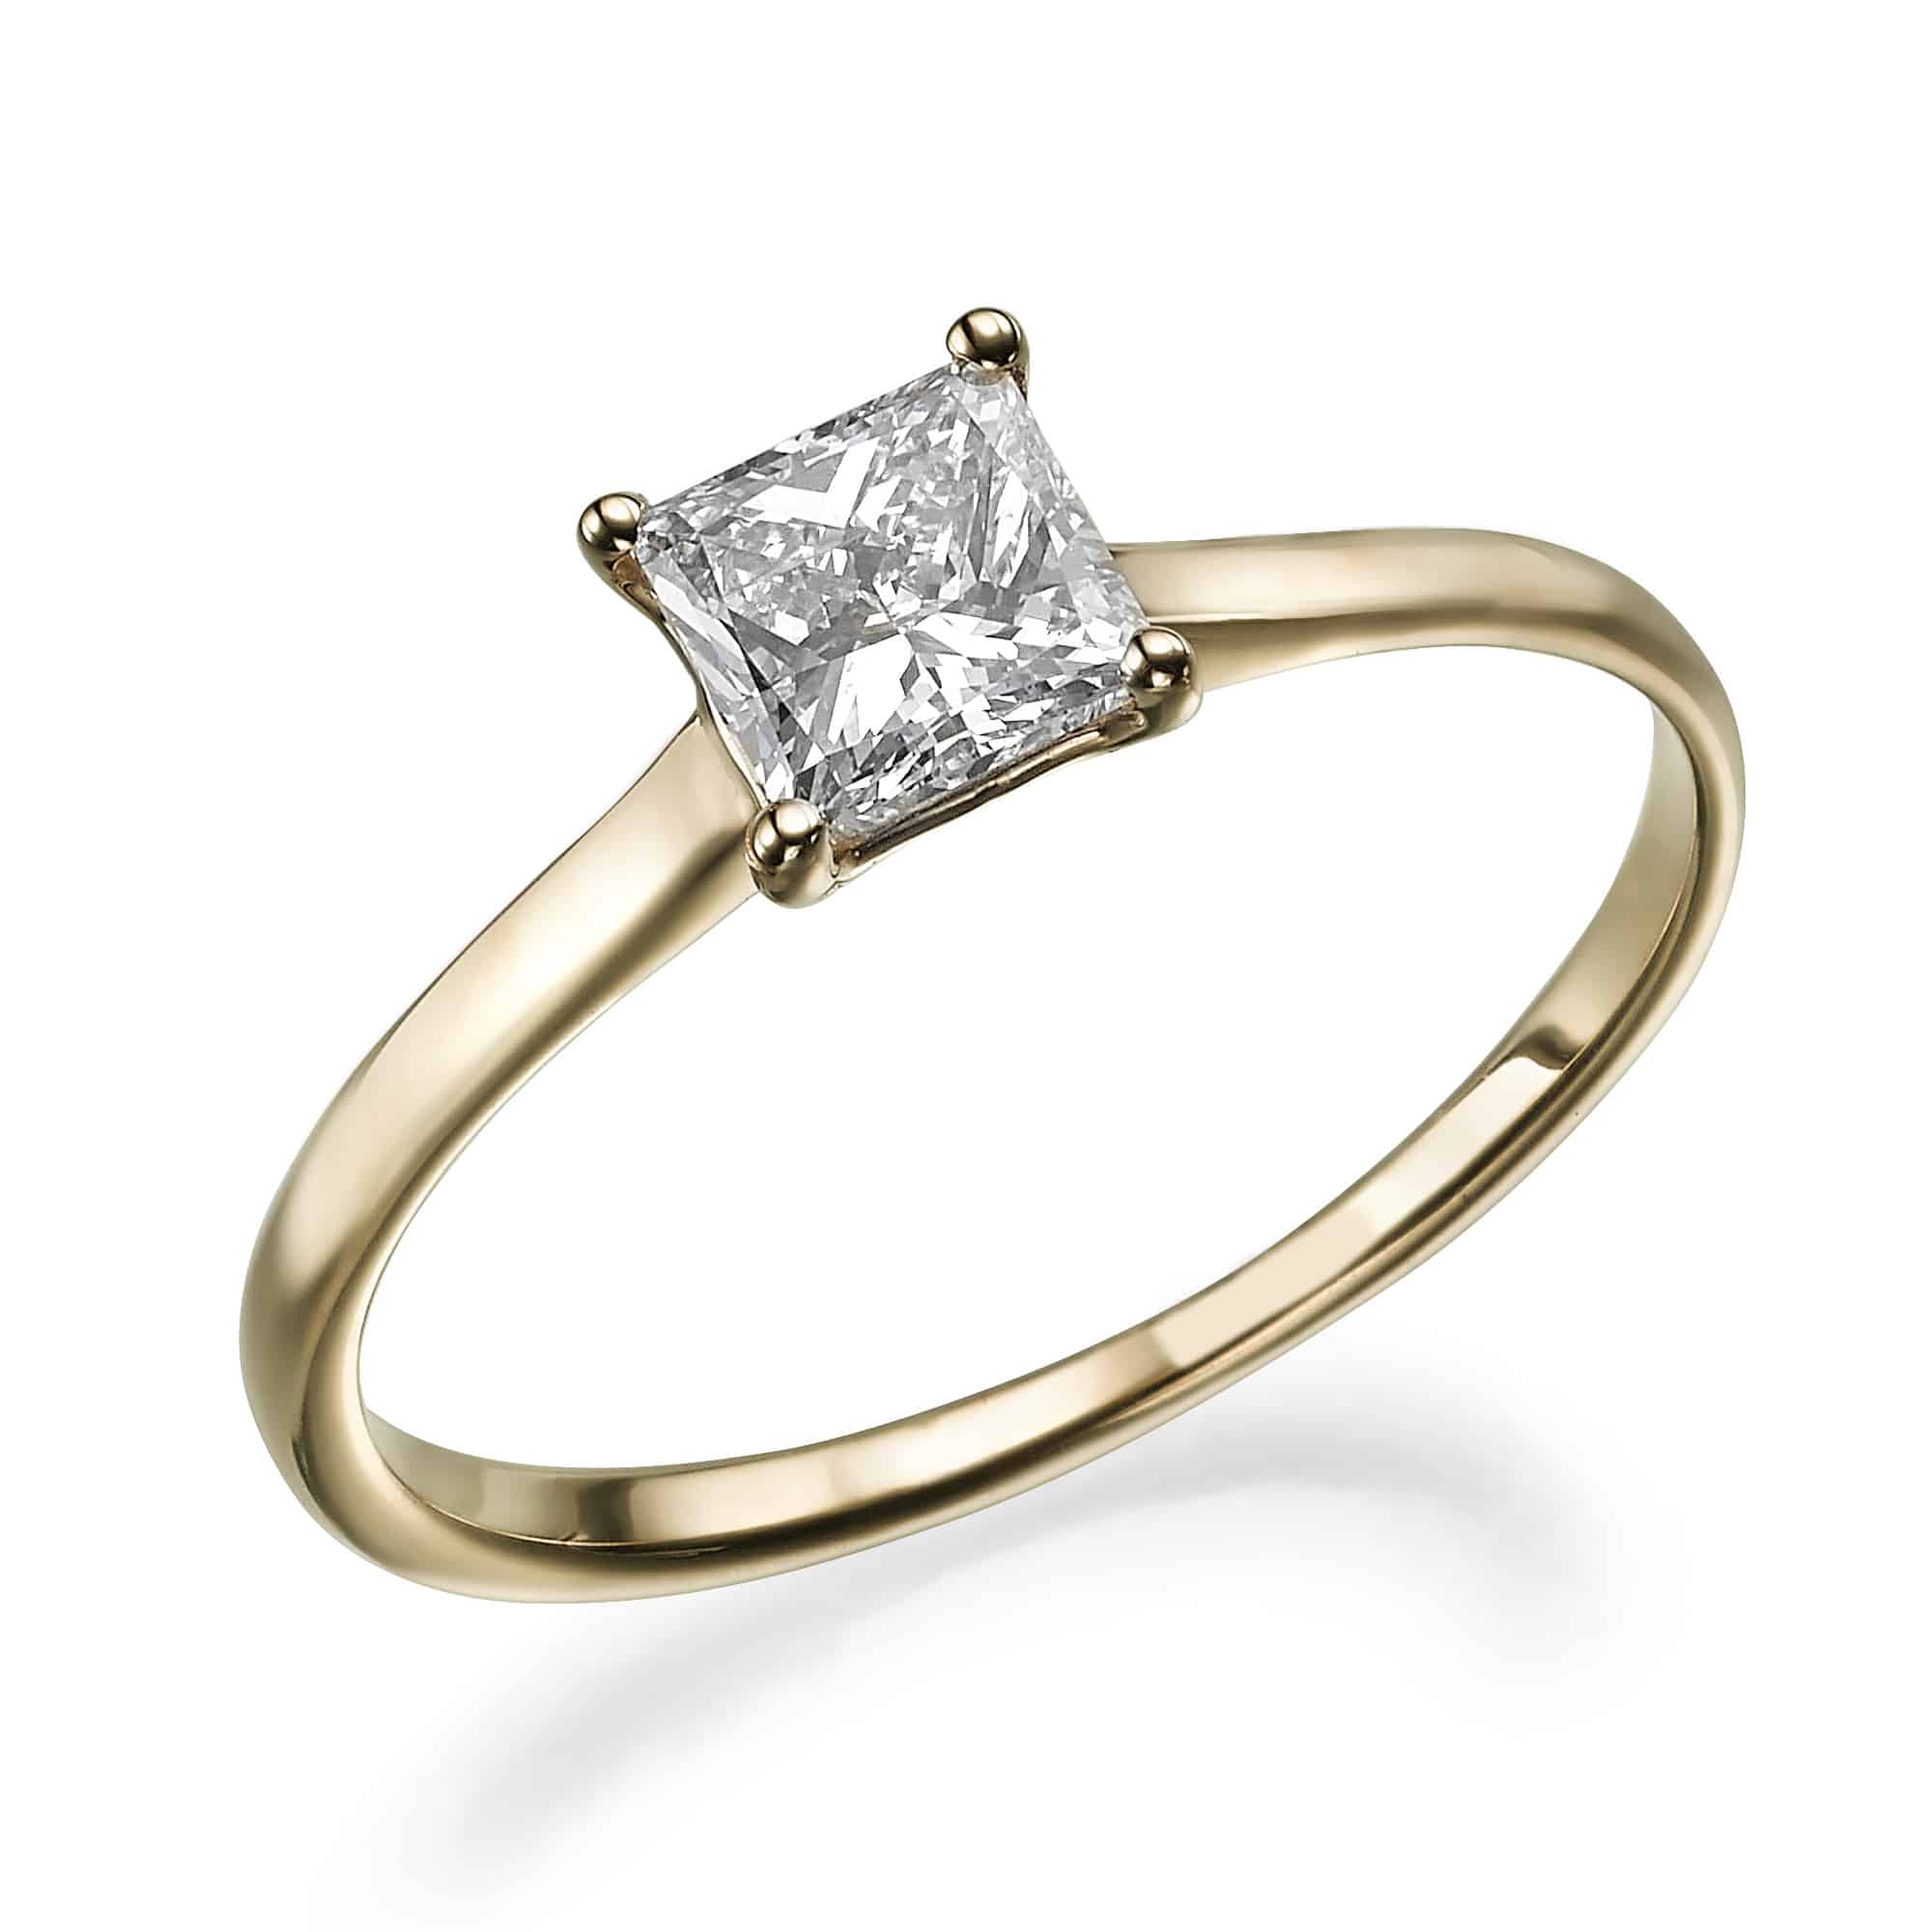 טבעת יהלום בודדת בחיתוך נסיכה משובצת בלהקת זהב צהוב דקיקה, המכונה טבעת קאיה.